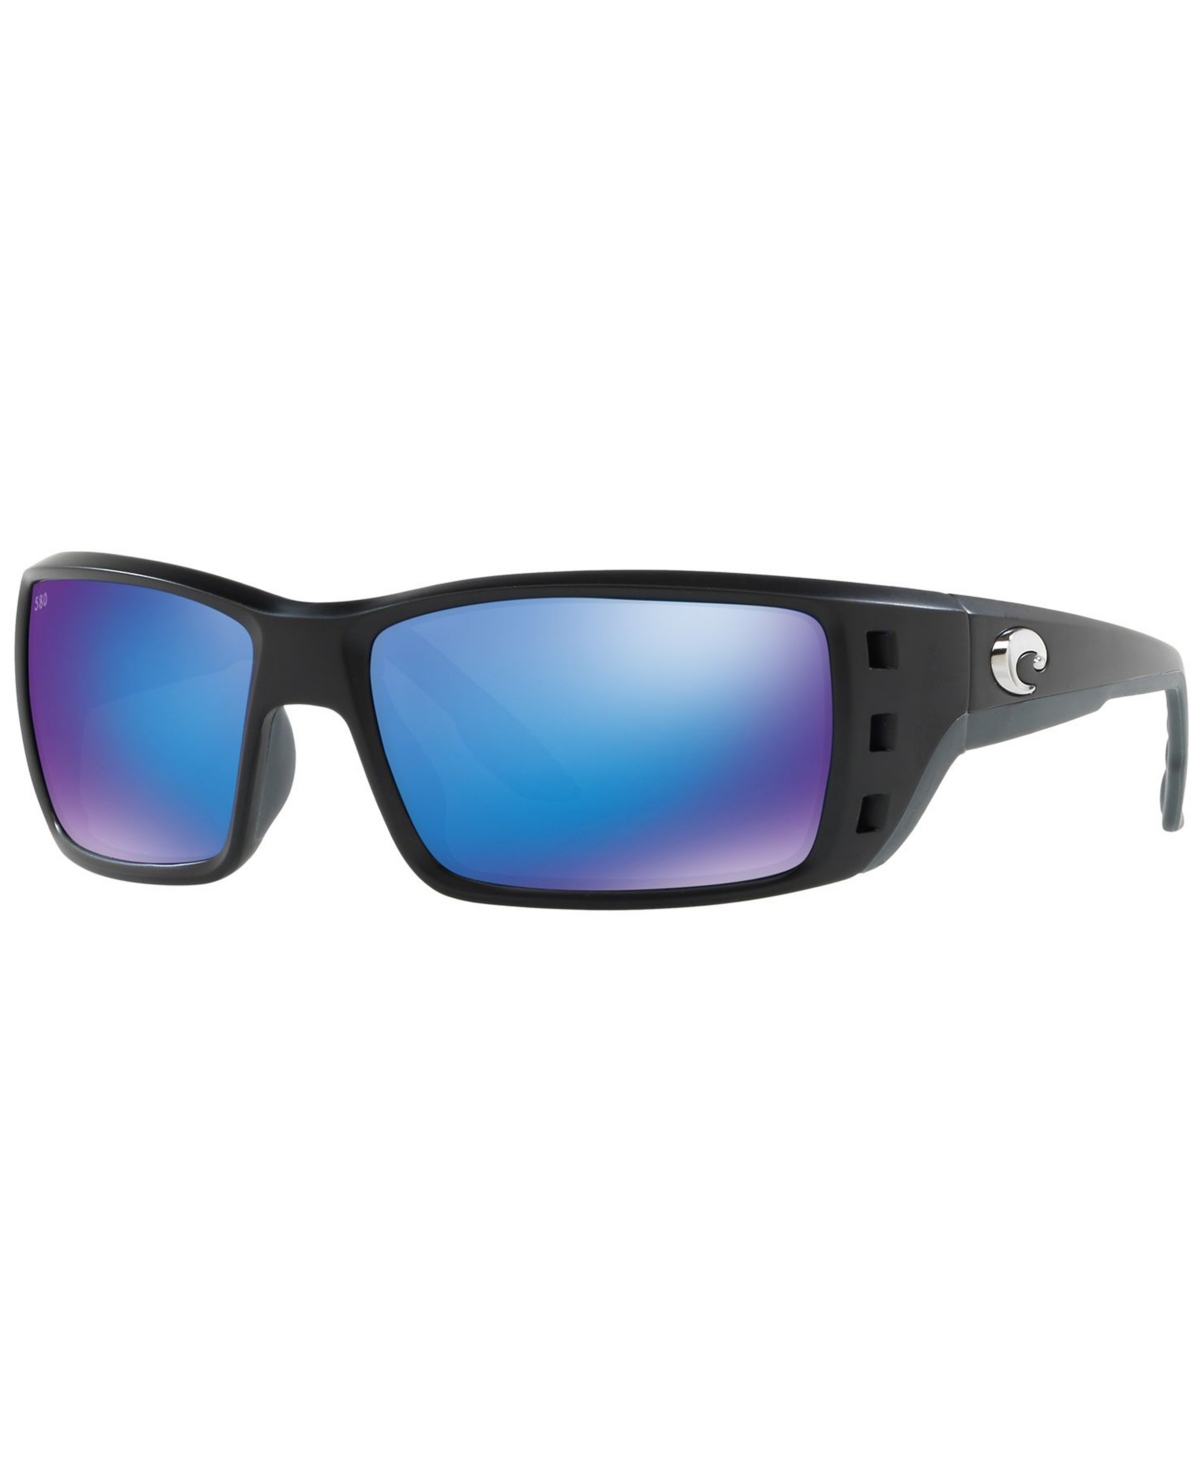 Costa Del Mar Polarized Sunglasses, Permit 62 In Black Matte,blue Mirror